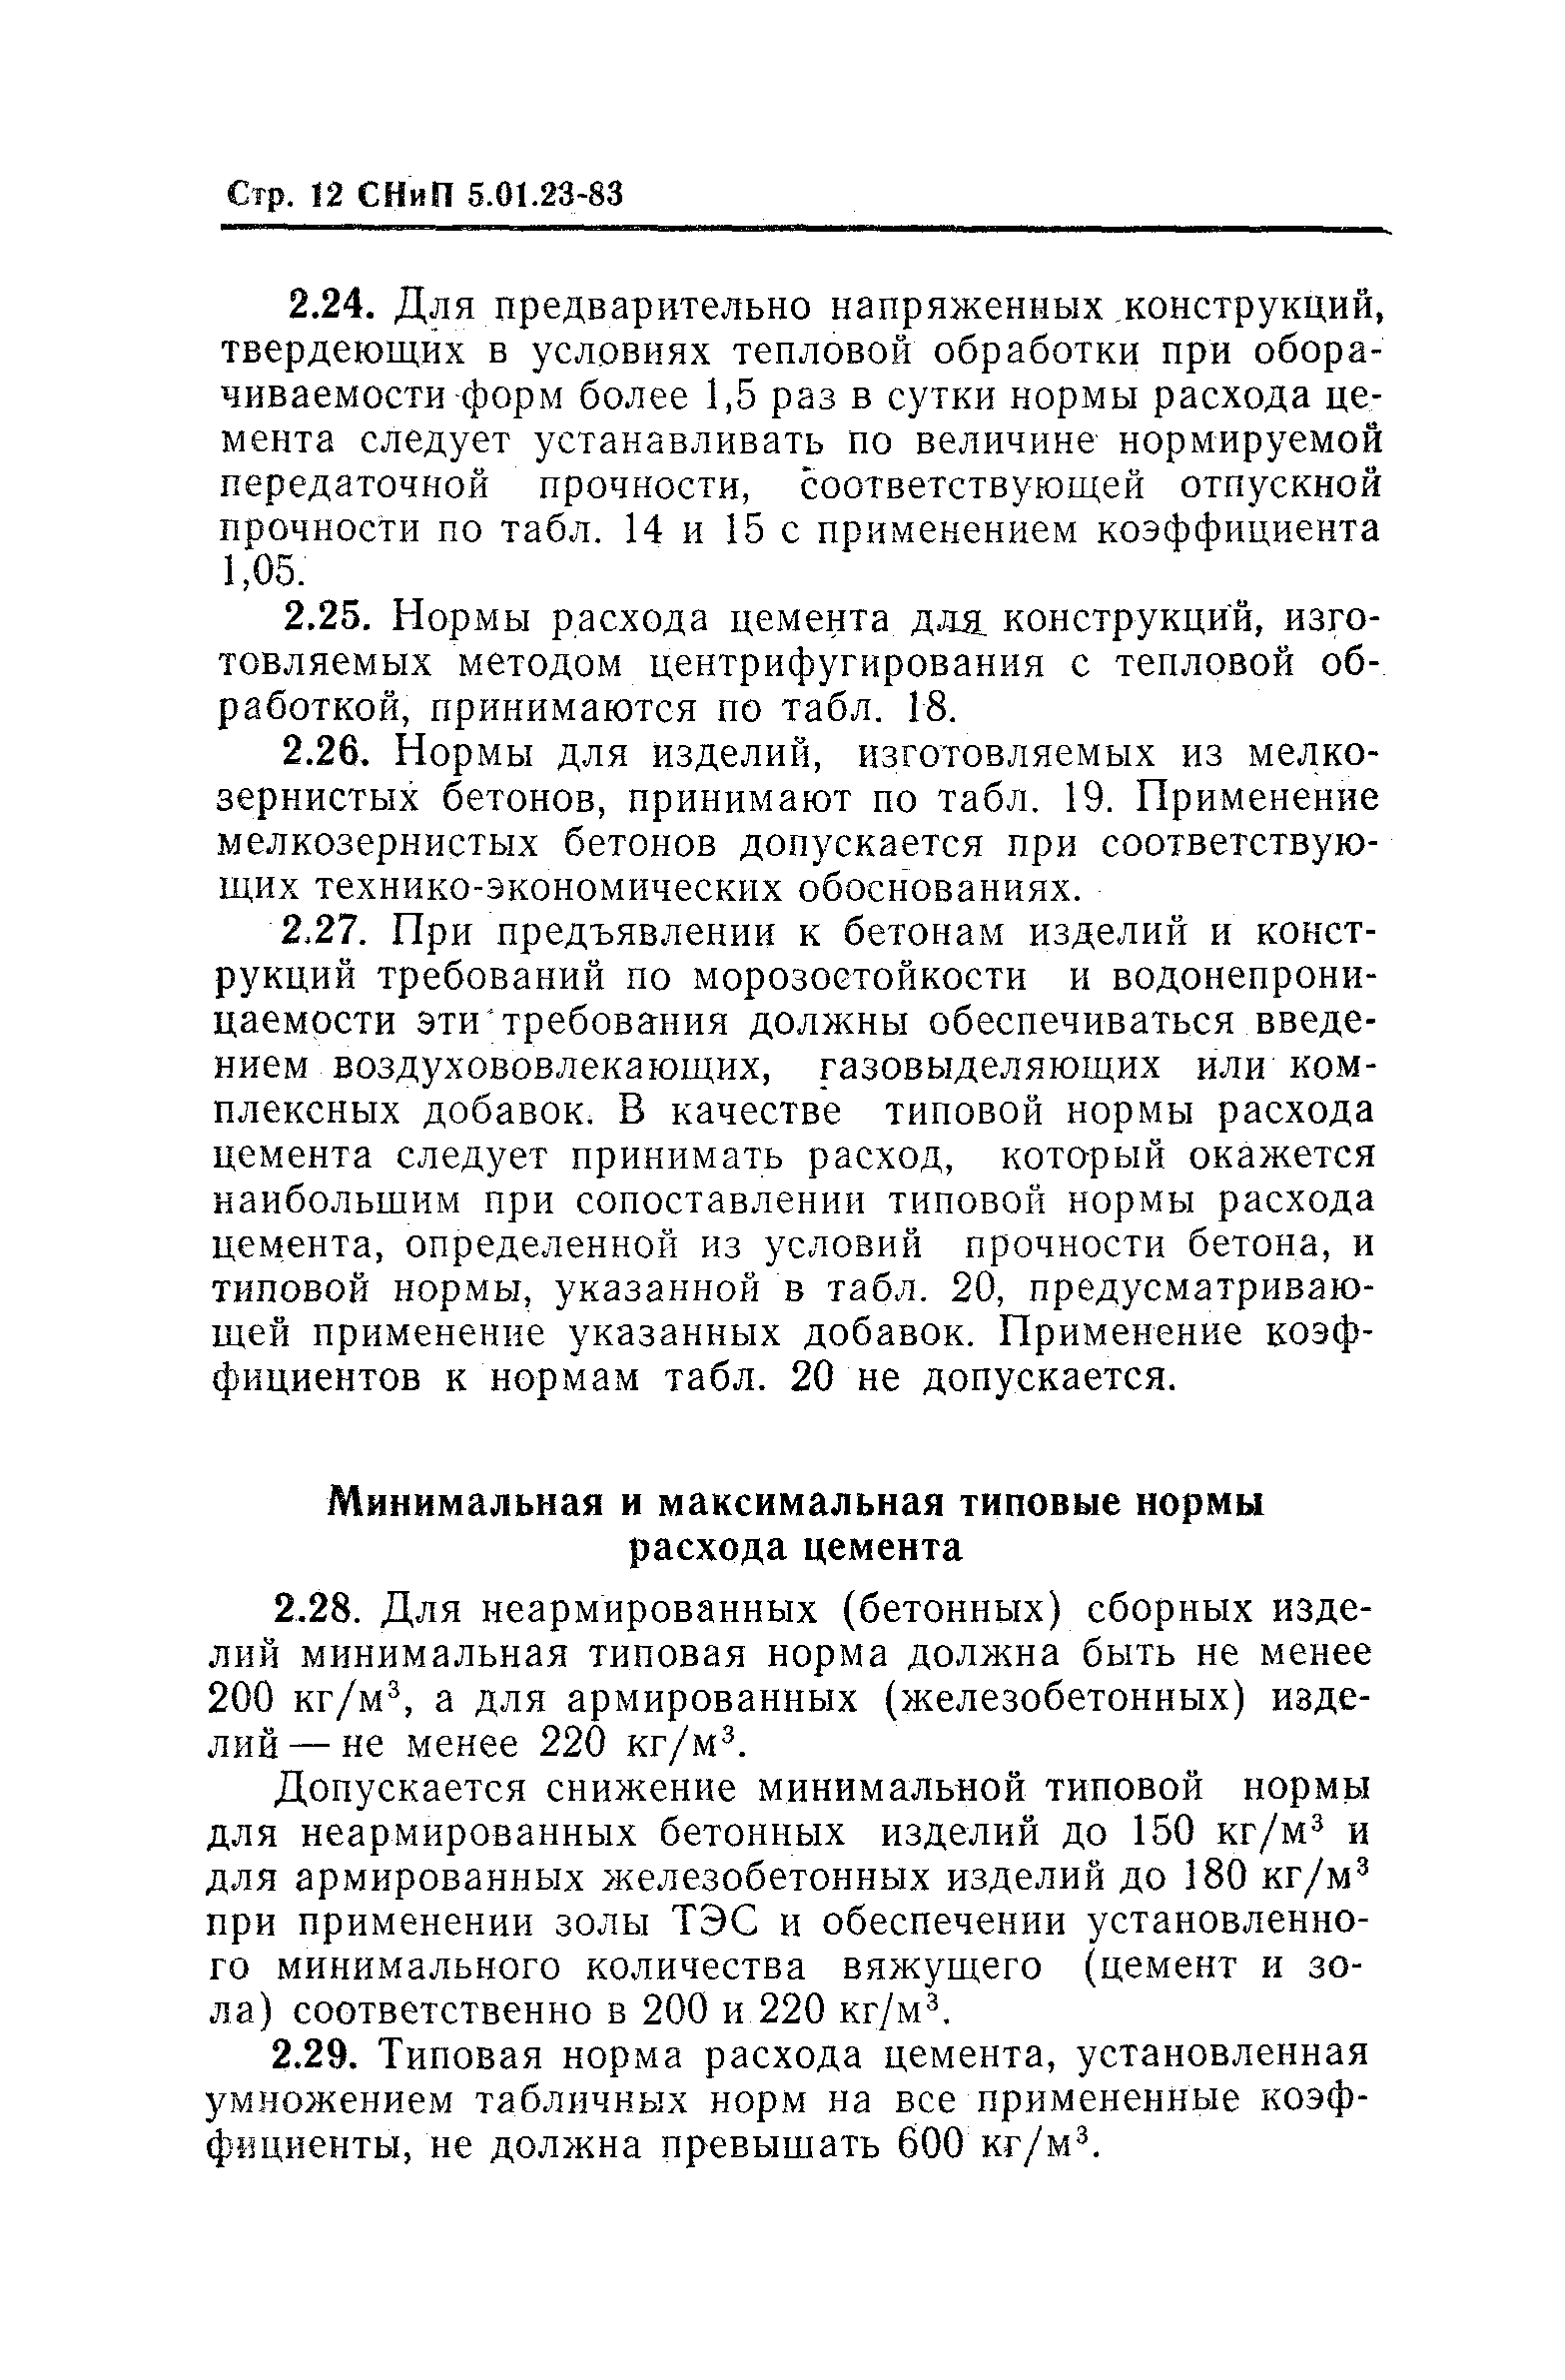 СНиП 5.01.23-83